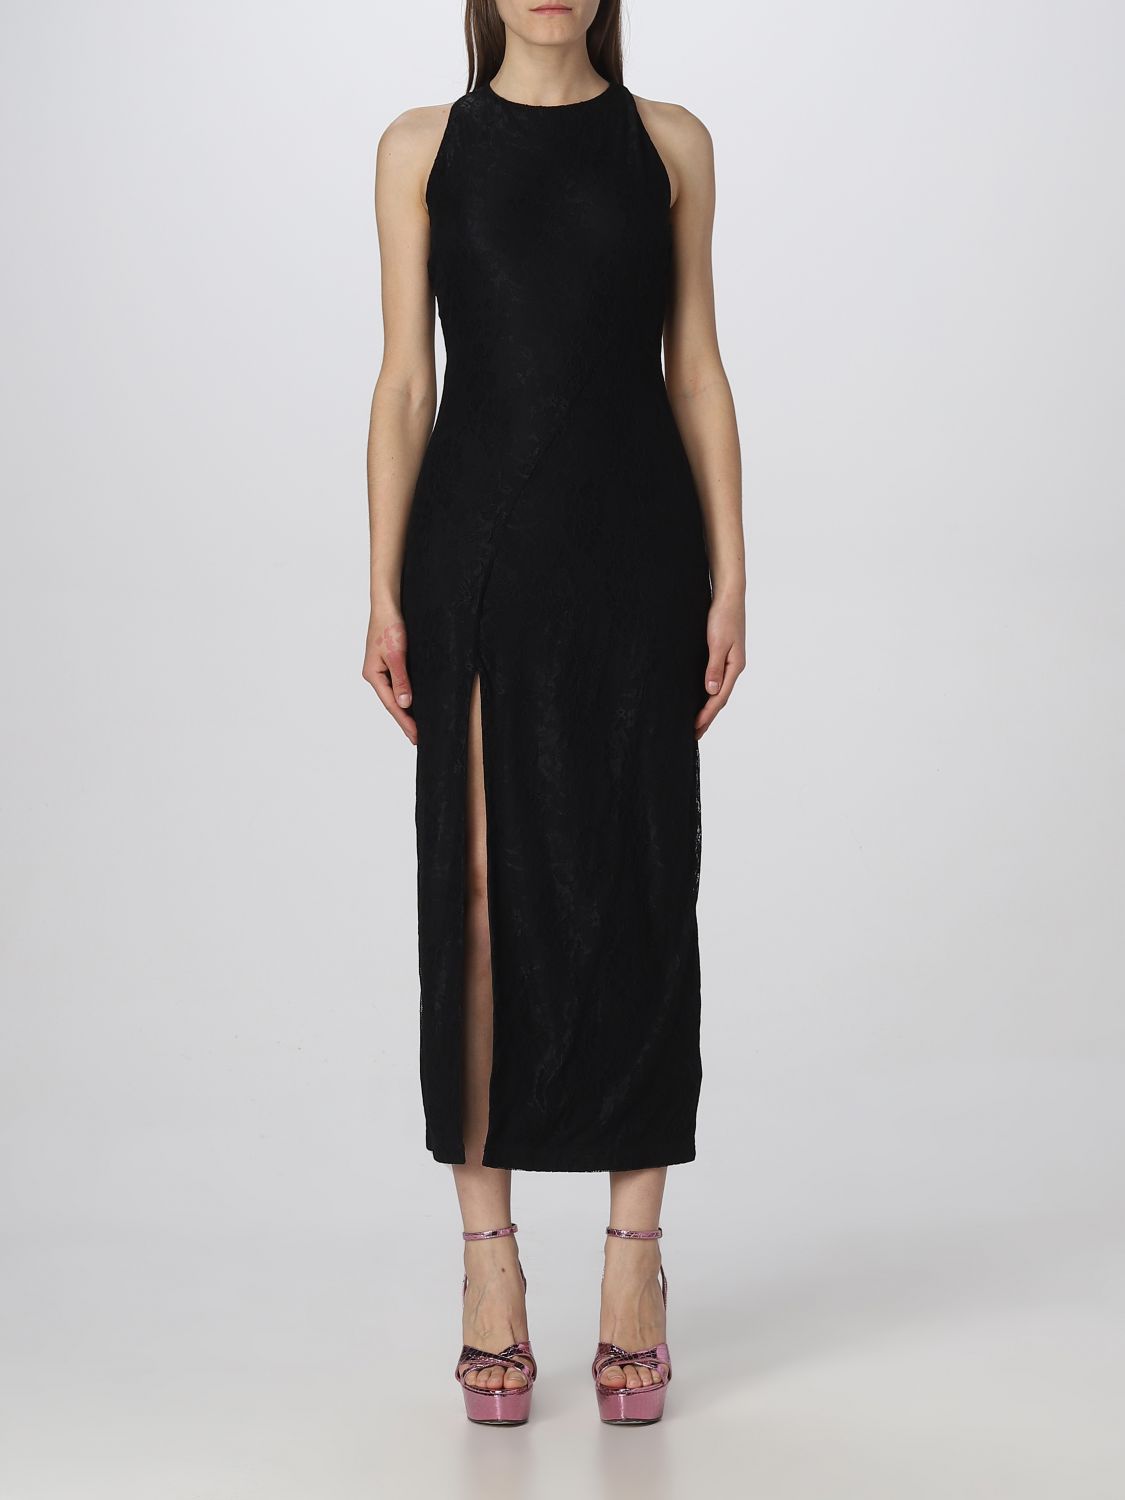 드레스 로테이트: 드레스 Rotate 여성 블랙 1